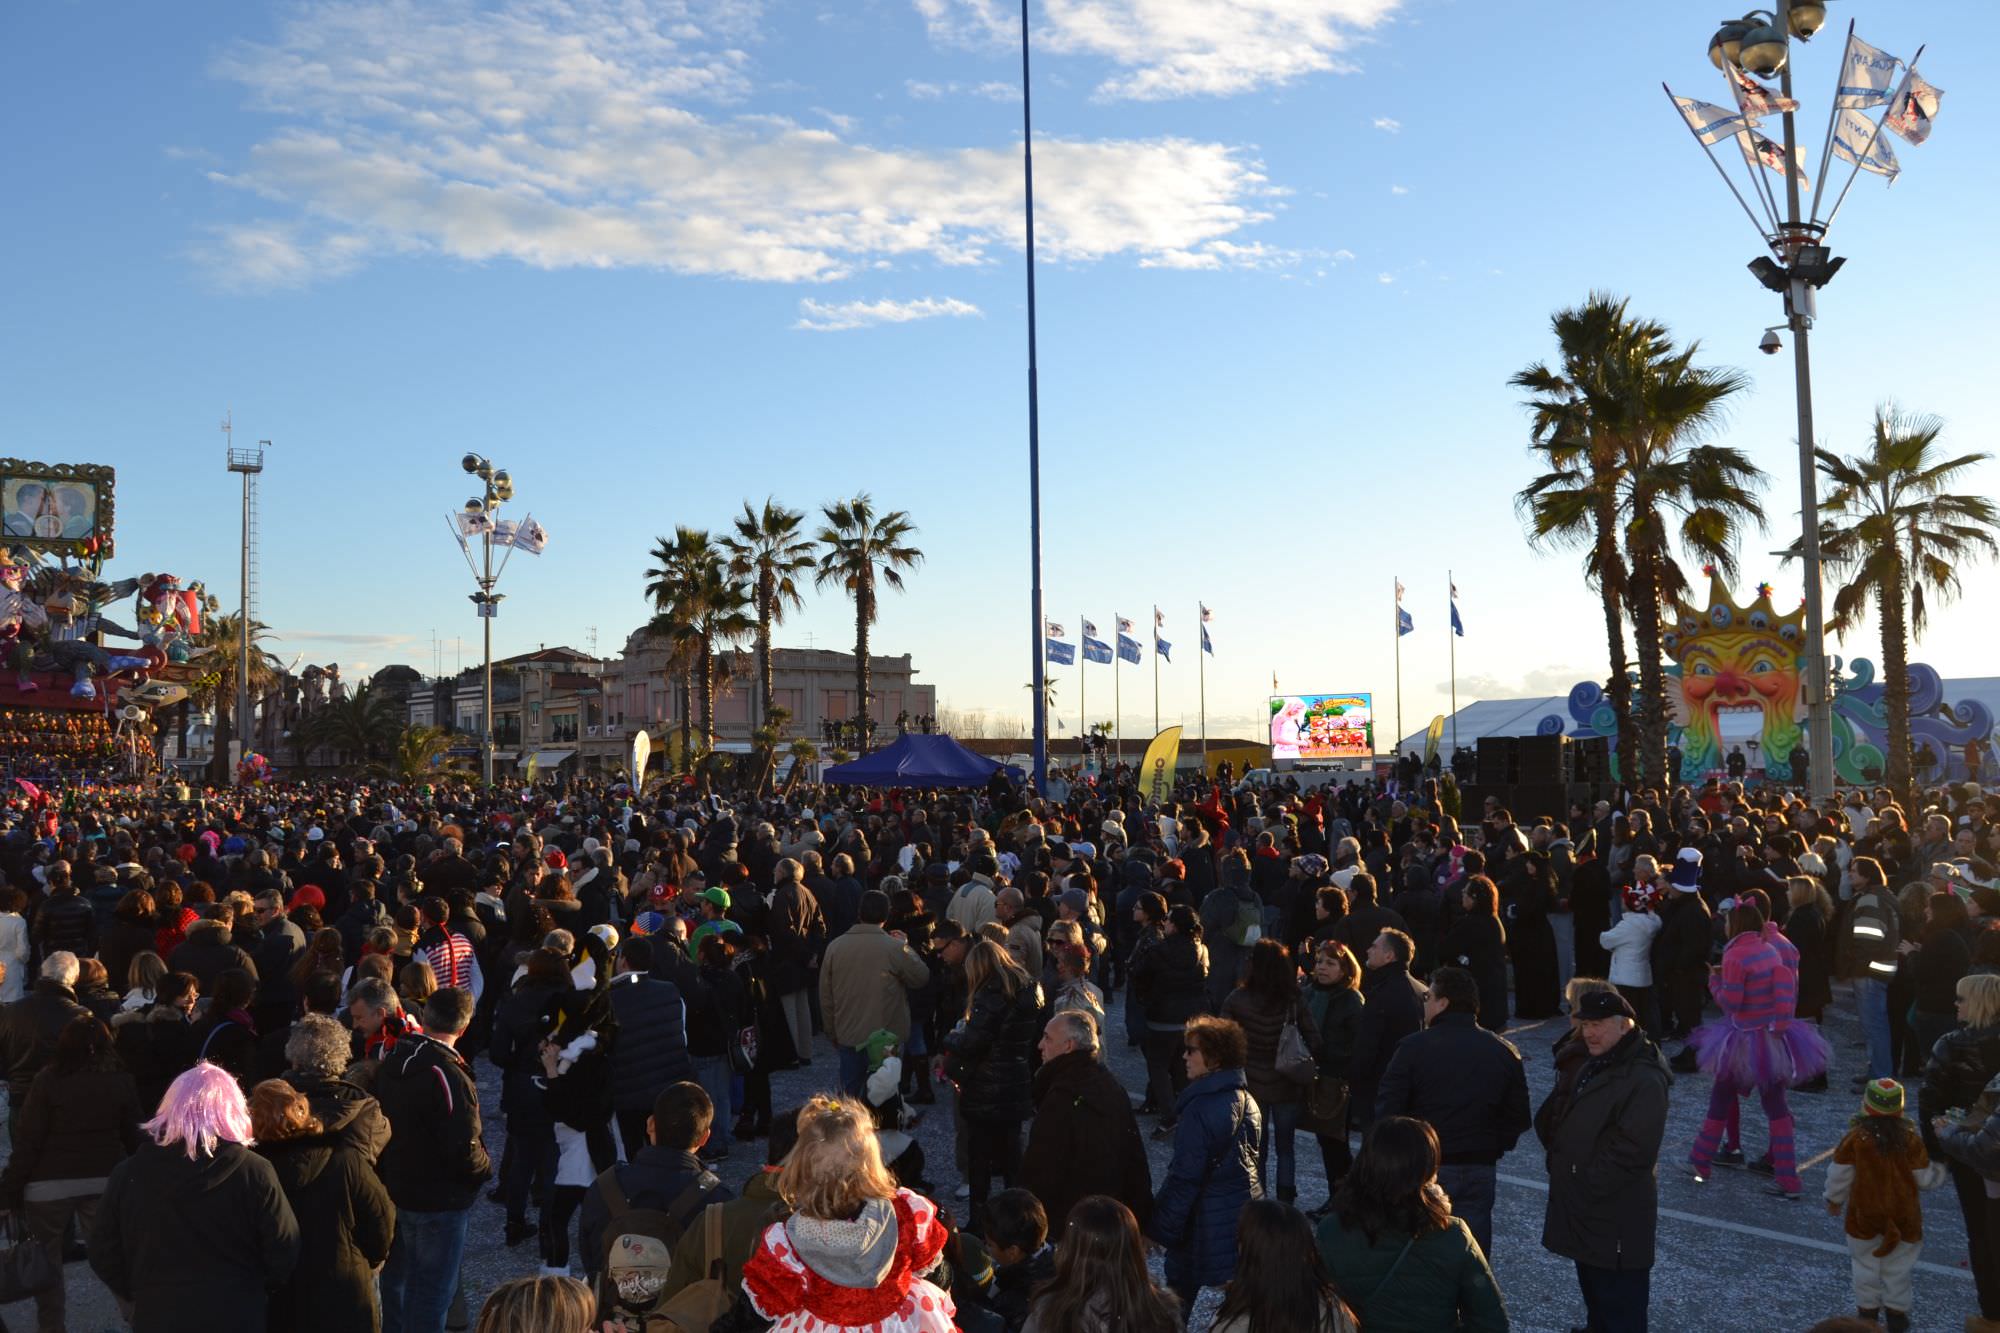 Si fingono turisti al Carnevale per borseggiare i passanti. Denunciati un sedicenne e un diciassettenne